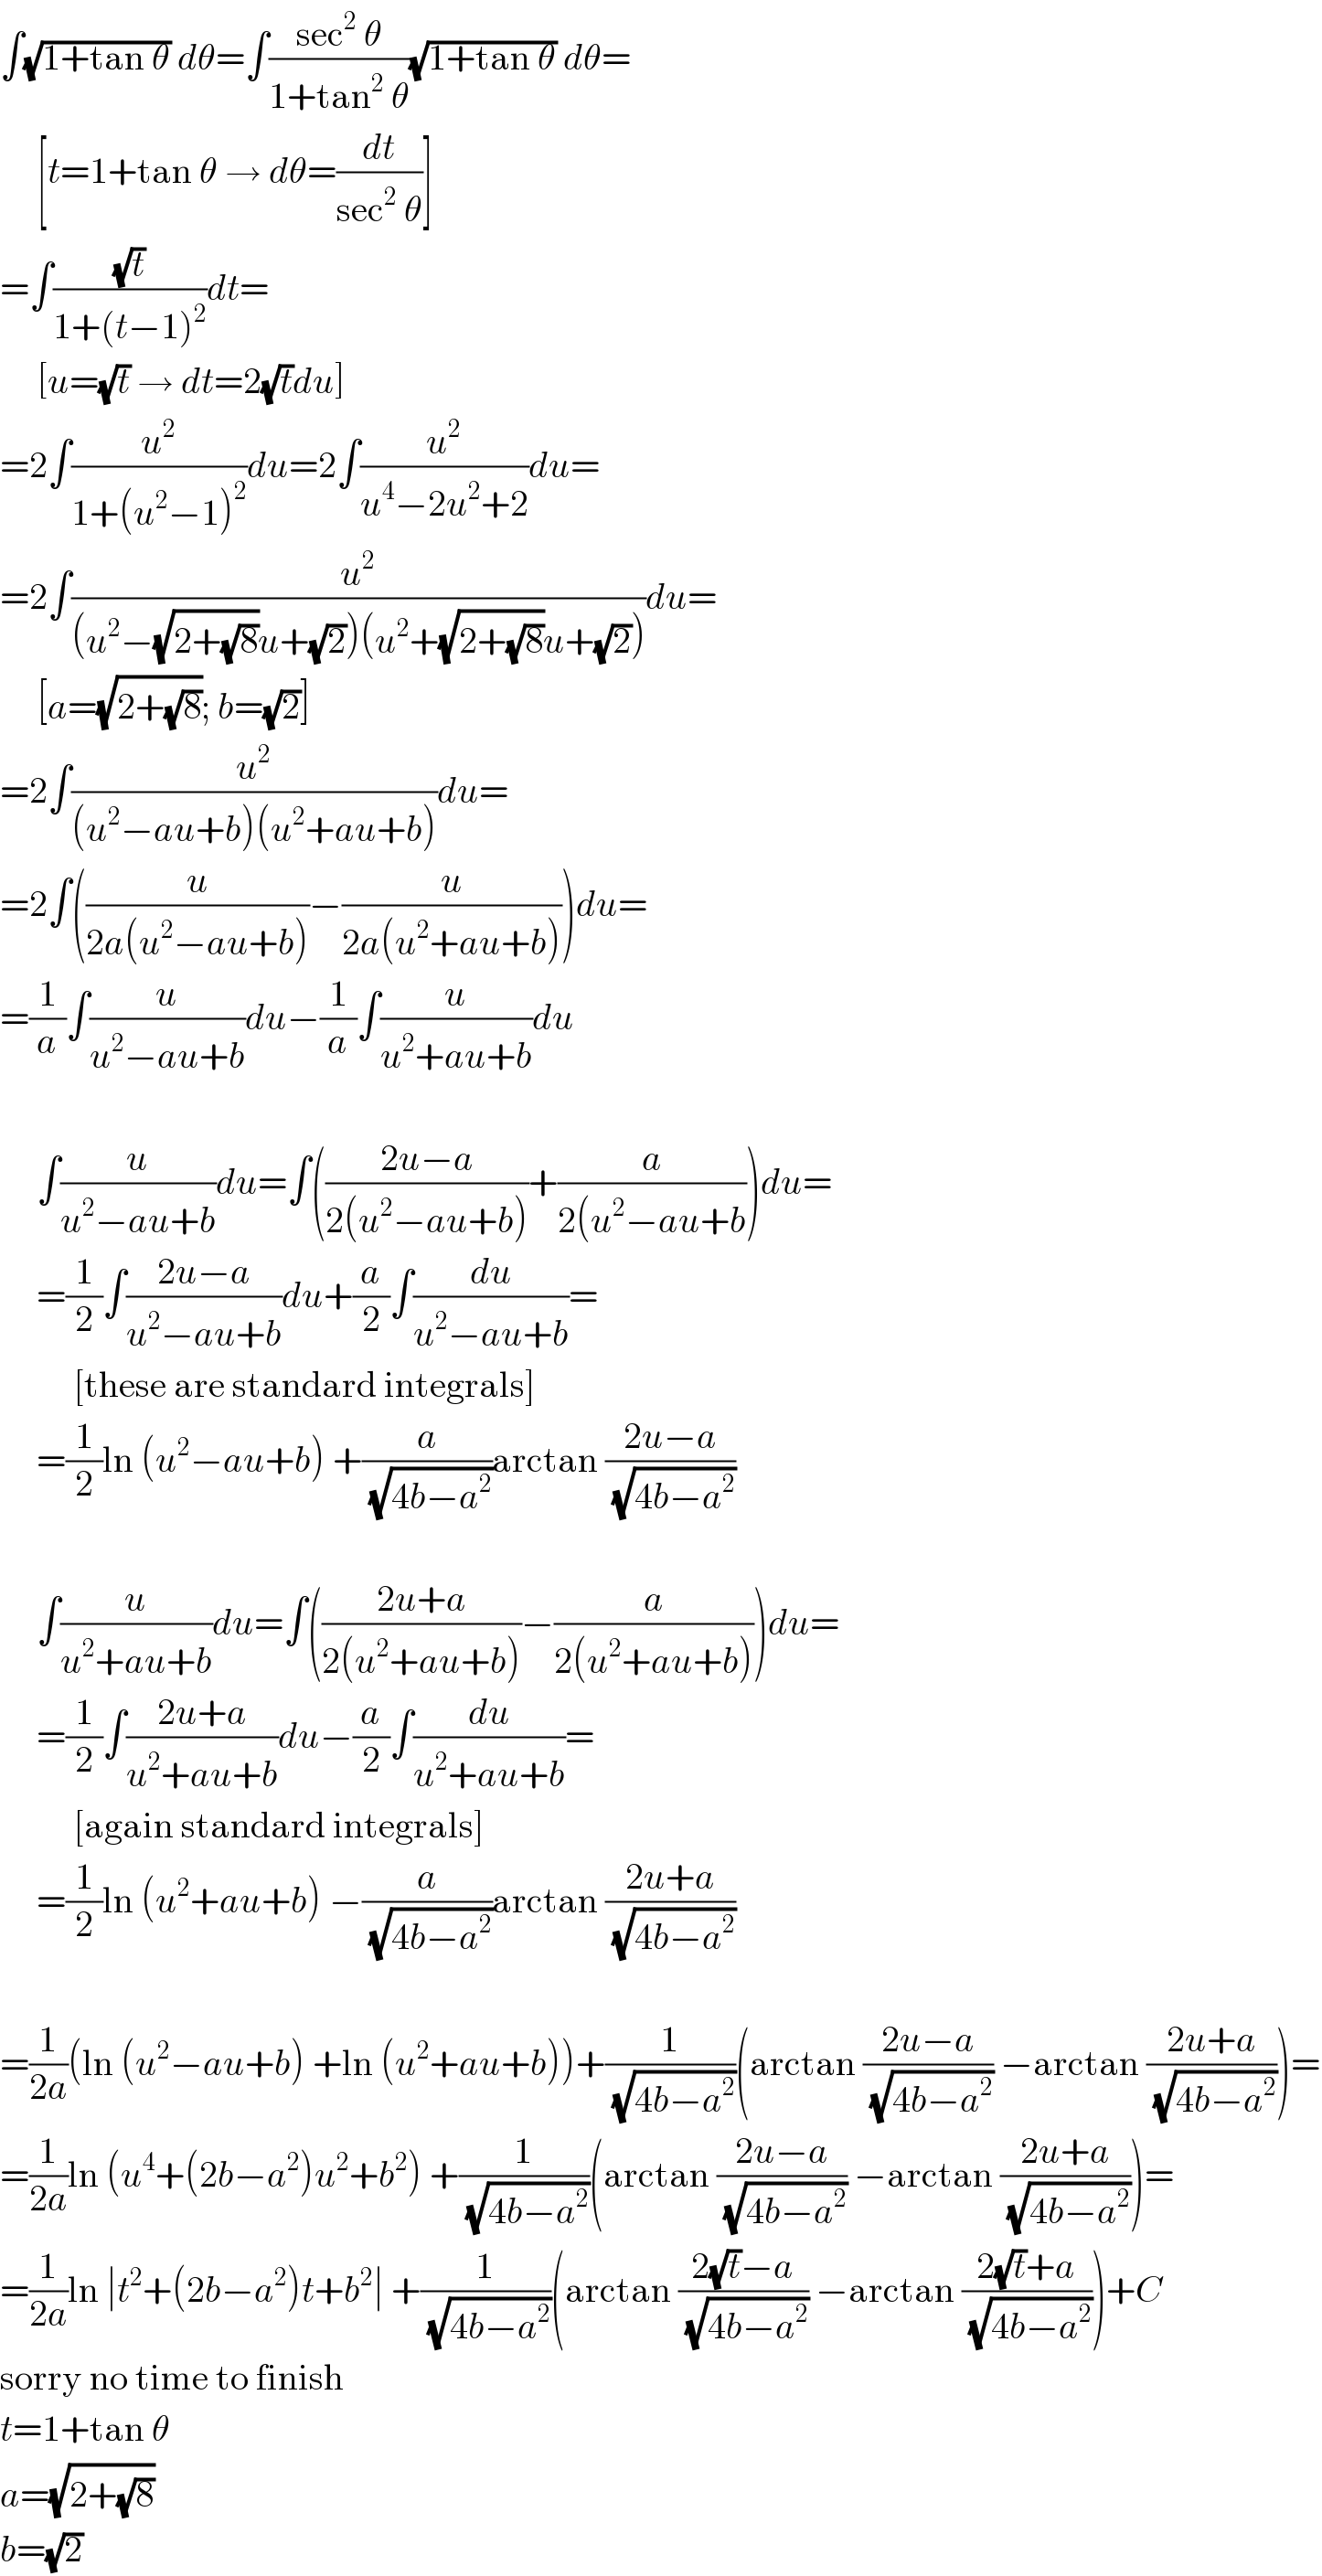 ∫(√(1+tan θ)) dθ=∫((sec^2  θ)/(1+tan^2  θ))(√(1+tan θ)) dθ=       [t=1+tan θ → dθ=(dt/(sec^2  θ))]  =∫((√t)/(1+(t−1)^2 ))dt=       [u=(√t) → dt=2(√t)du]  =2∫(u^2 /(1+(u^2 −1)^2 ))du=2∫(u^2 /(u^4 −2u^2 +2))du=  =2∫(u^2 /((u^2 −(√(2+(√8)))u+(√2))(u^2 +(√(2+(√8)))u+(√2))))du=       [a=(√(2+(√8))); b=(√2)]  =2∫(u^2 /((u^2 −au+b)(u^2 +au+b)))du=  =2∫((u/(2a(u^2 −au+b)))−(u/(2a(u^2 +au+b))))du=  =(1/a)∫(u/(u^2 −au+b))du−(1/a)∫(u/(u^2 +au+b))du         ∫(u/(u^2 −au+b))du=∫(((2u−a)/(2(u^2 −au+b)))+(a/(2(u^2 −au+b)))du=       =(1/2)∫((2u−a)/(u^2 −au+b))du+(a/2)∫(du/(u^2 −au+b))=            [these are standard integrals]       =(1/2)ln (u^2 −au+b) +(a/(√(4b−a^2 )))arctan ((2u−a)/(√(4b−a^2 )))         ∫(u/(u^2 +au+b))du=∫(((2u+a)/(2(u^2 +au+b)))−(a/(2(u^2 +au+b))))du=       =(1/2)∫((2u+a)/(u^2 +au+b))du−(a/2)∫(du/(u^2 +au+b))=            [again standard integrals]       =(1/2)ln (u^2 +au+b) −(a/(√(4b−a^2 )))arctan ((2u+a)/(√(4b−a^2 )))    =(1/(2a))(ln (u^2 −au+b) +ln (u^2 +au+b))+(1/(√(4b−a^2 )))(arctan ((2u−a)/(√(4b−a^2 ))) −arctan ((2u+a)/(√(4b−a^2 ))))=  =(1/(2a))ln (u^4 +(2b−a^2 )u^2 +b^2 ) +(1/(√(4b−a^2 )))(arctan ((2u−a)/(√(4b−a^2 ))) −arctan ((2u+a)/(√(4b−a^2 ))))=  =(1/(2a))ln ∣t^2 +(2b−a^2 )t+b^2 ∣ +(1/(√(4b−a^2 )))(arctan ((2(√t)−a)/(√(4b−a^2 ))) −arctan ((2(√t)+a)/(√(4b−a^2 ))))+C  sorry no time to finish  t=1+tan θ  a=(√(2+(√8)))  b=(√2)  